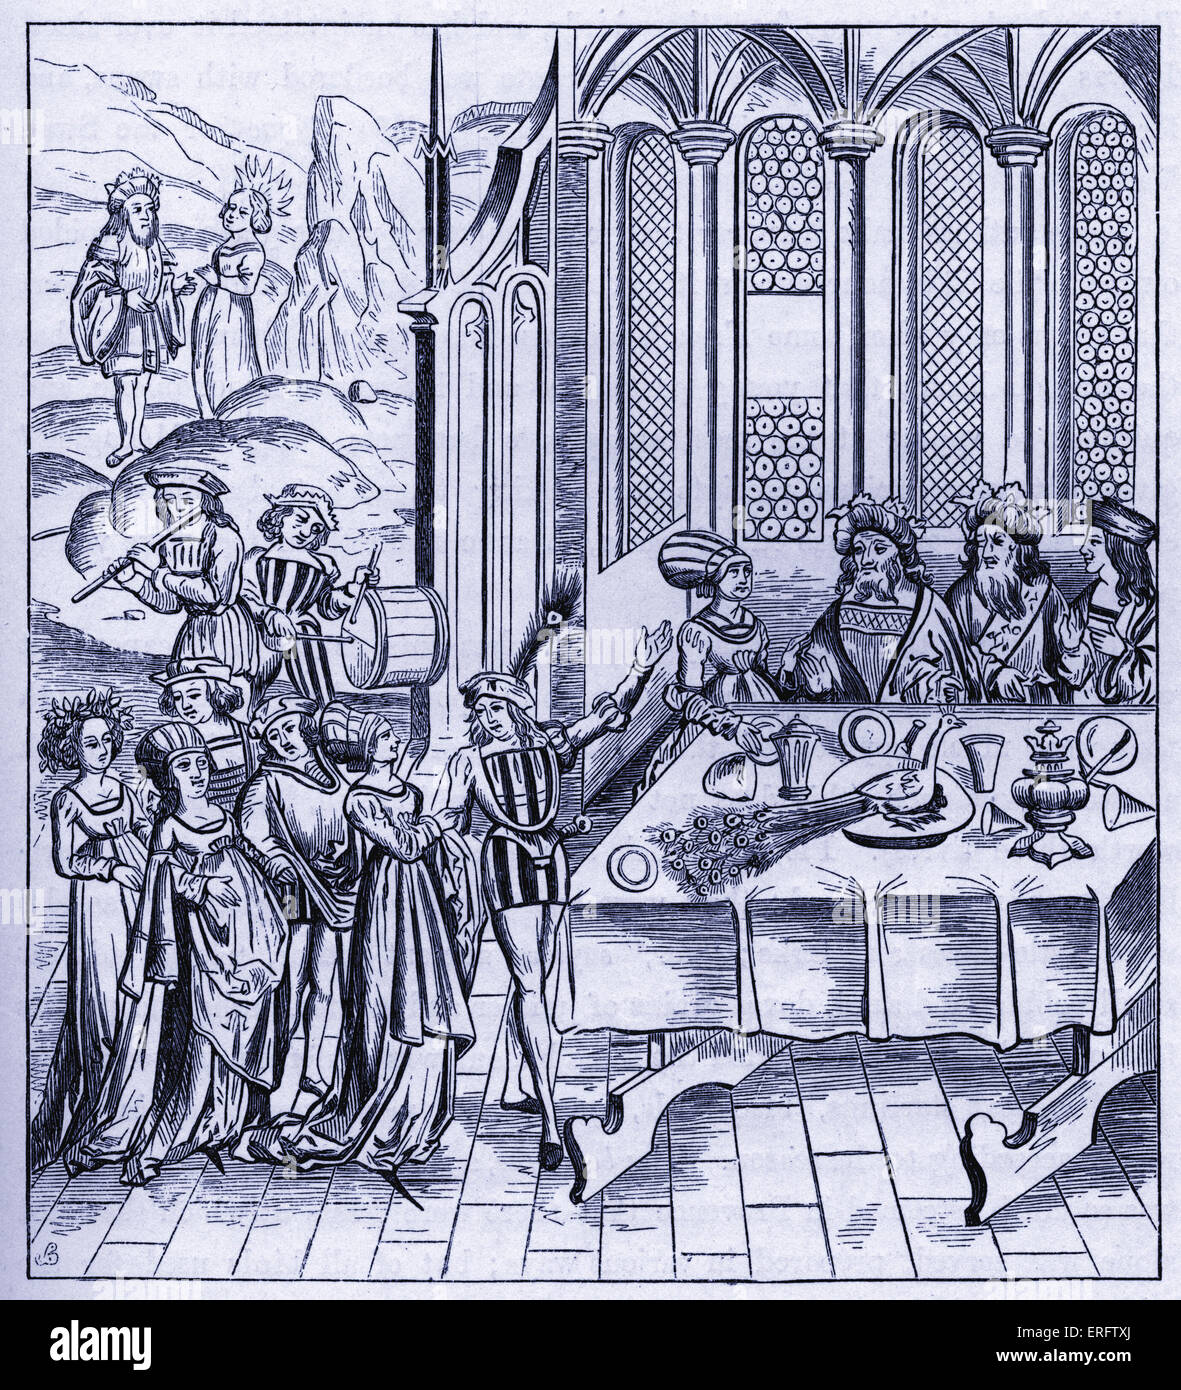 Mittelalterliche Staatsbankett - dienen der Pfau Faksimile von einem Holzschnitt in einer Auflage von Virgil veröffentlicht in Lyon im Jahre 1517. Stockfoto